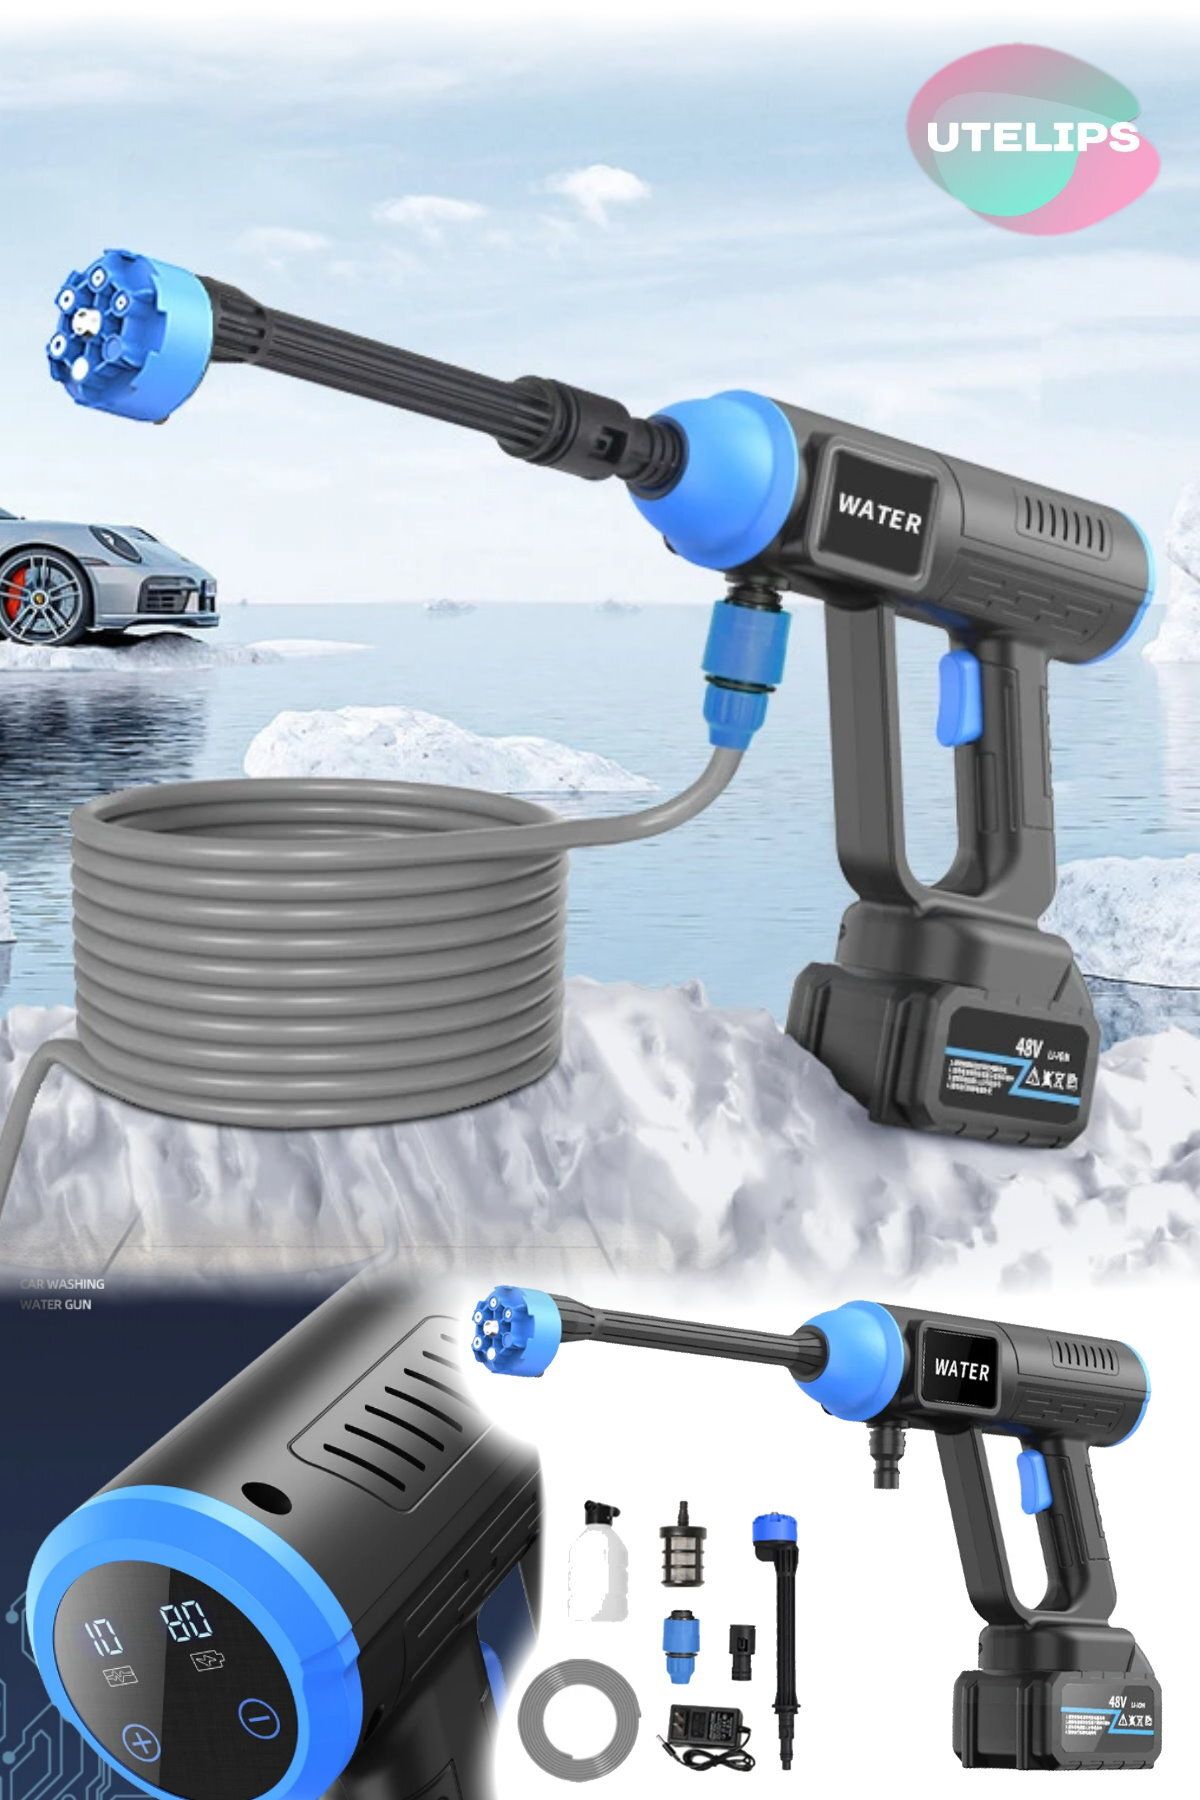 Utelips Kablosuz Araba Yıkama Taşınabilir Şarj Edilebilir Yüksek Basınçlı Su Tabancası Araba Temizleme Aracı